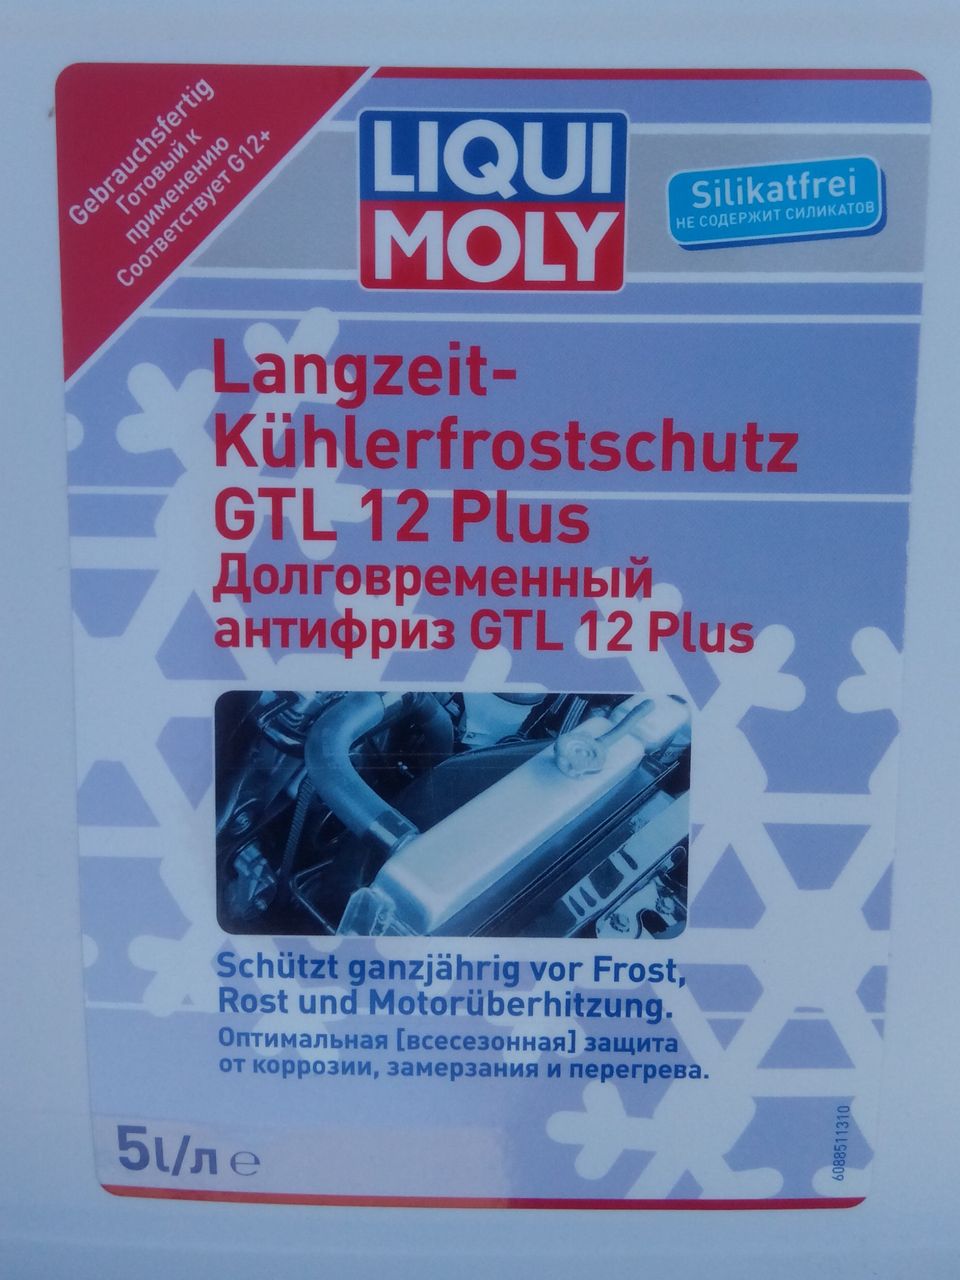 Ликви ком. Liqui Moly Langzeit Kuhlerfrostschutz GTL 12 Plus. Презервативы Ликви моли. Антифрикционная присадка с молибденом.